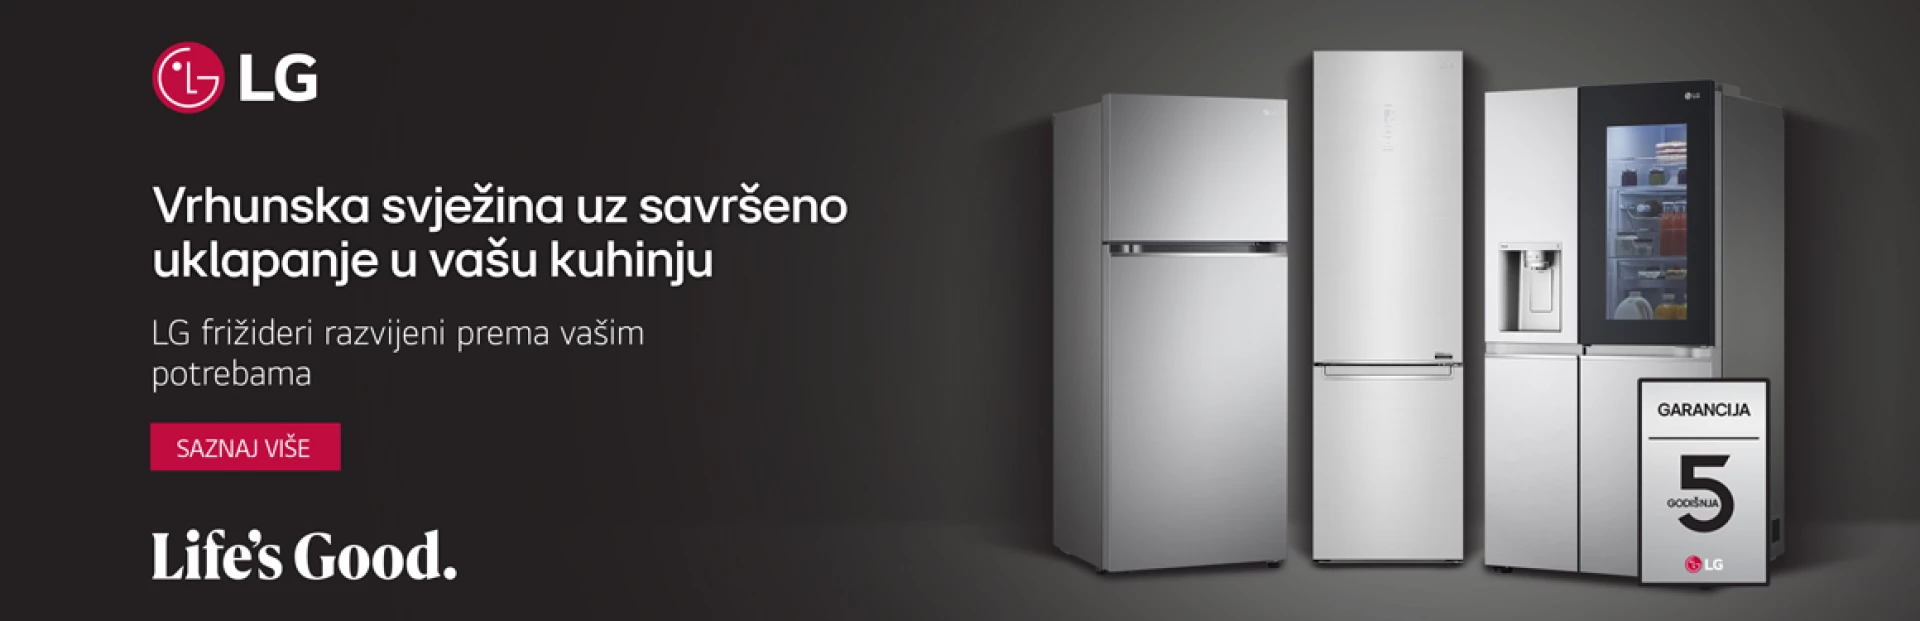 LG frižideri s pametnim značajkama čine idealnog asistenta u kuhinji.